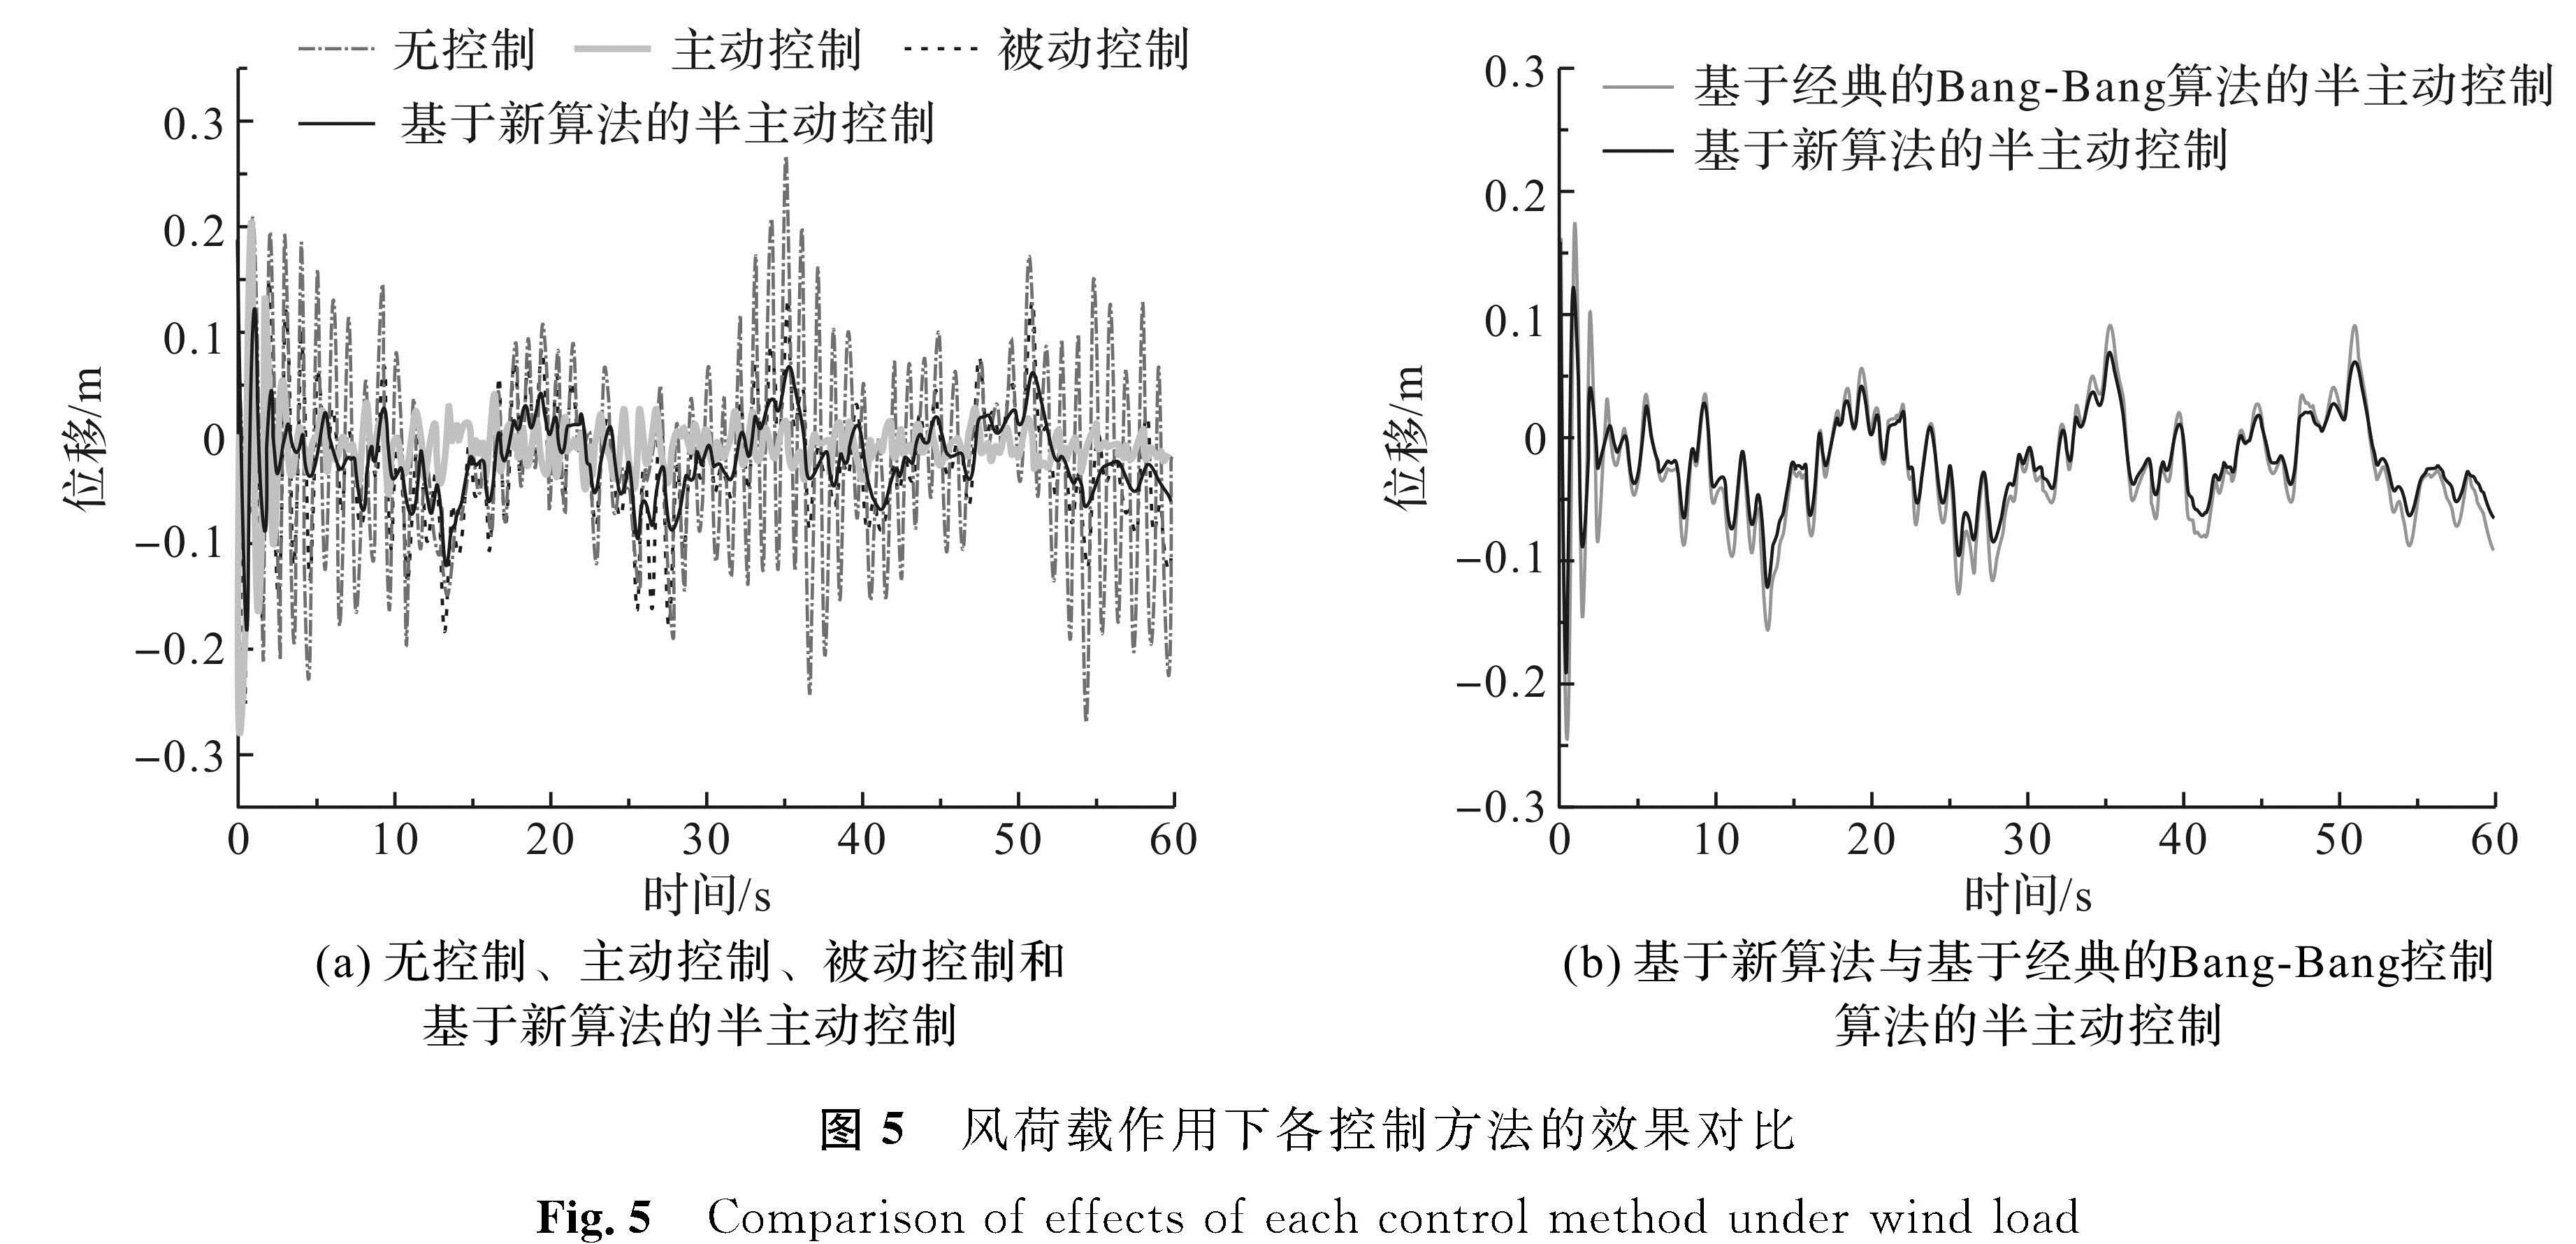 图5 风荷载作用下各控制方法的效果对比<br/>Fig.5 Comparison of effects of each control method under wind load